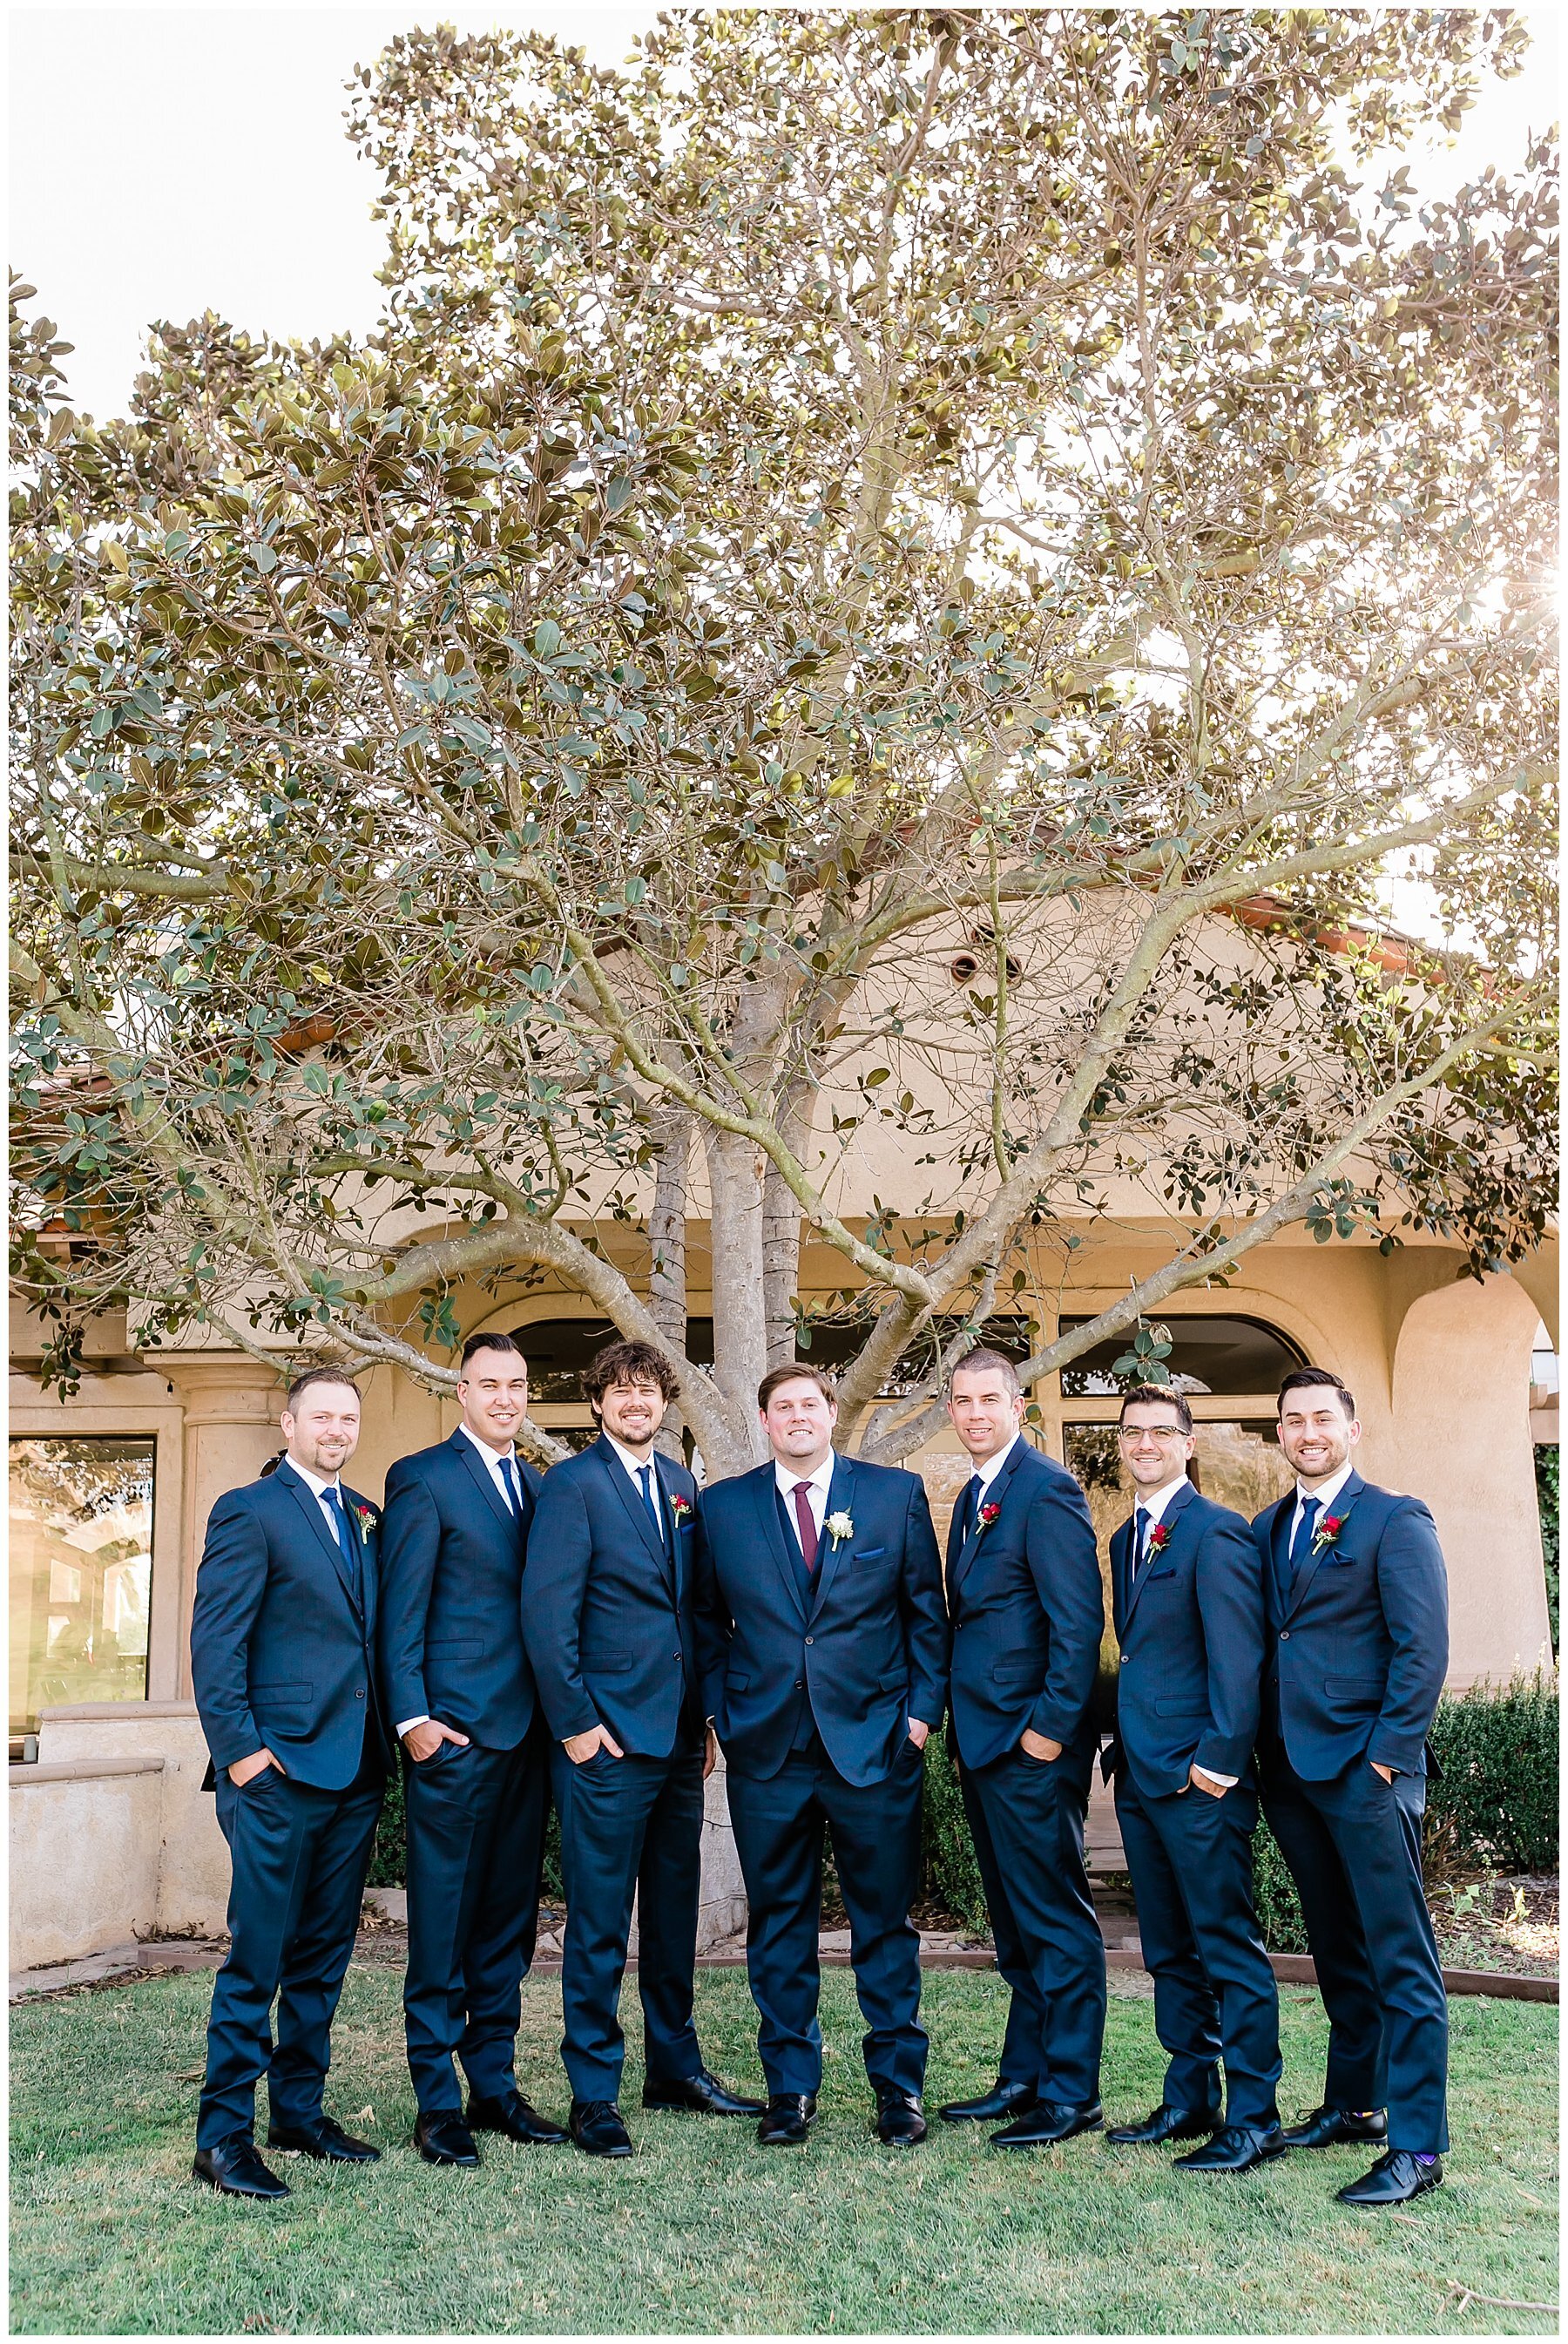  groomsmen standing together 